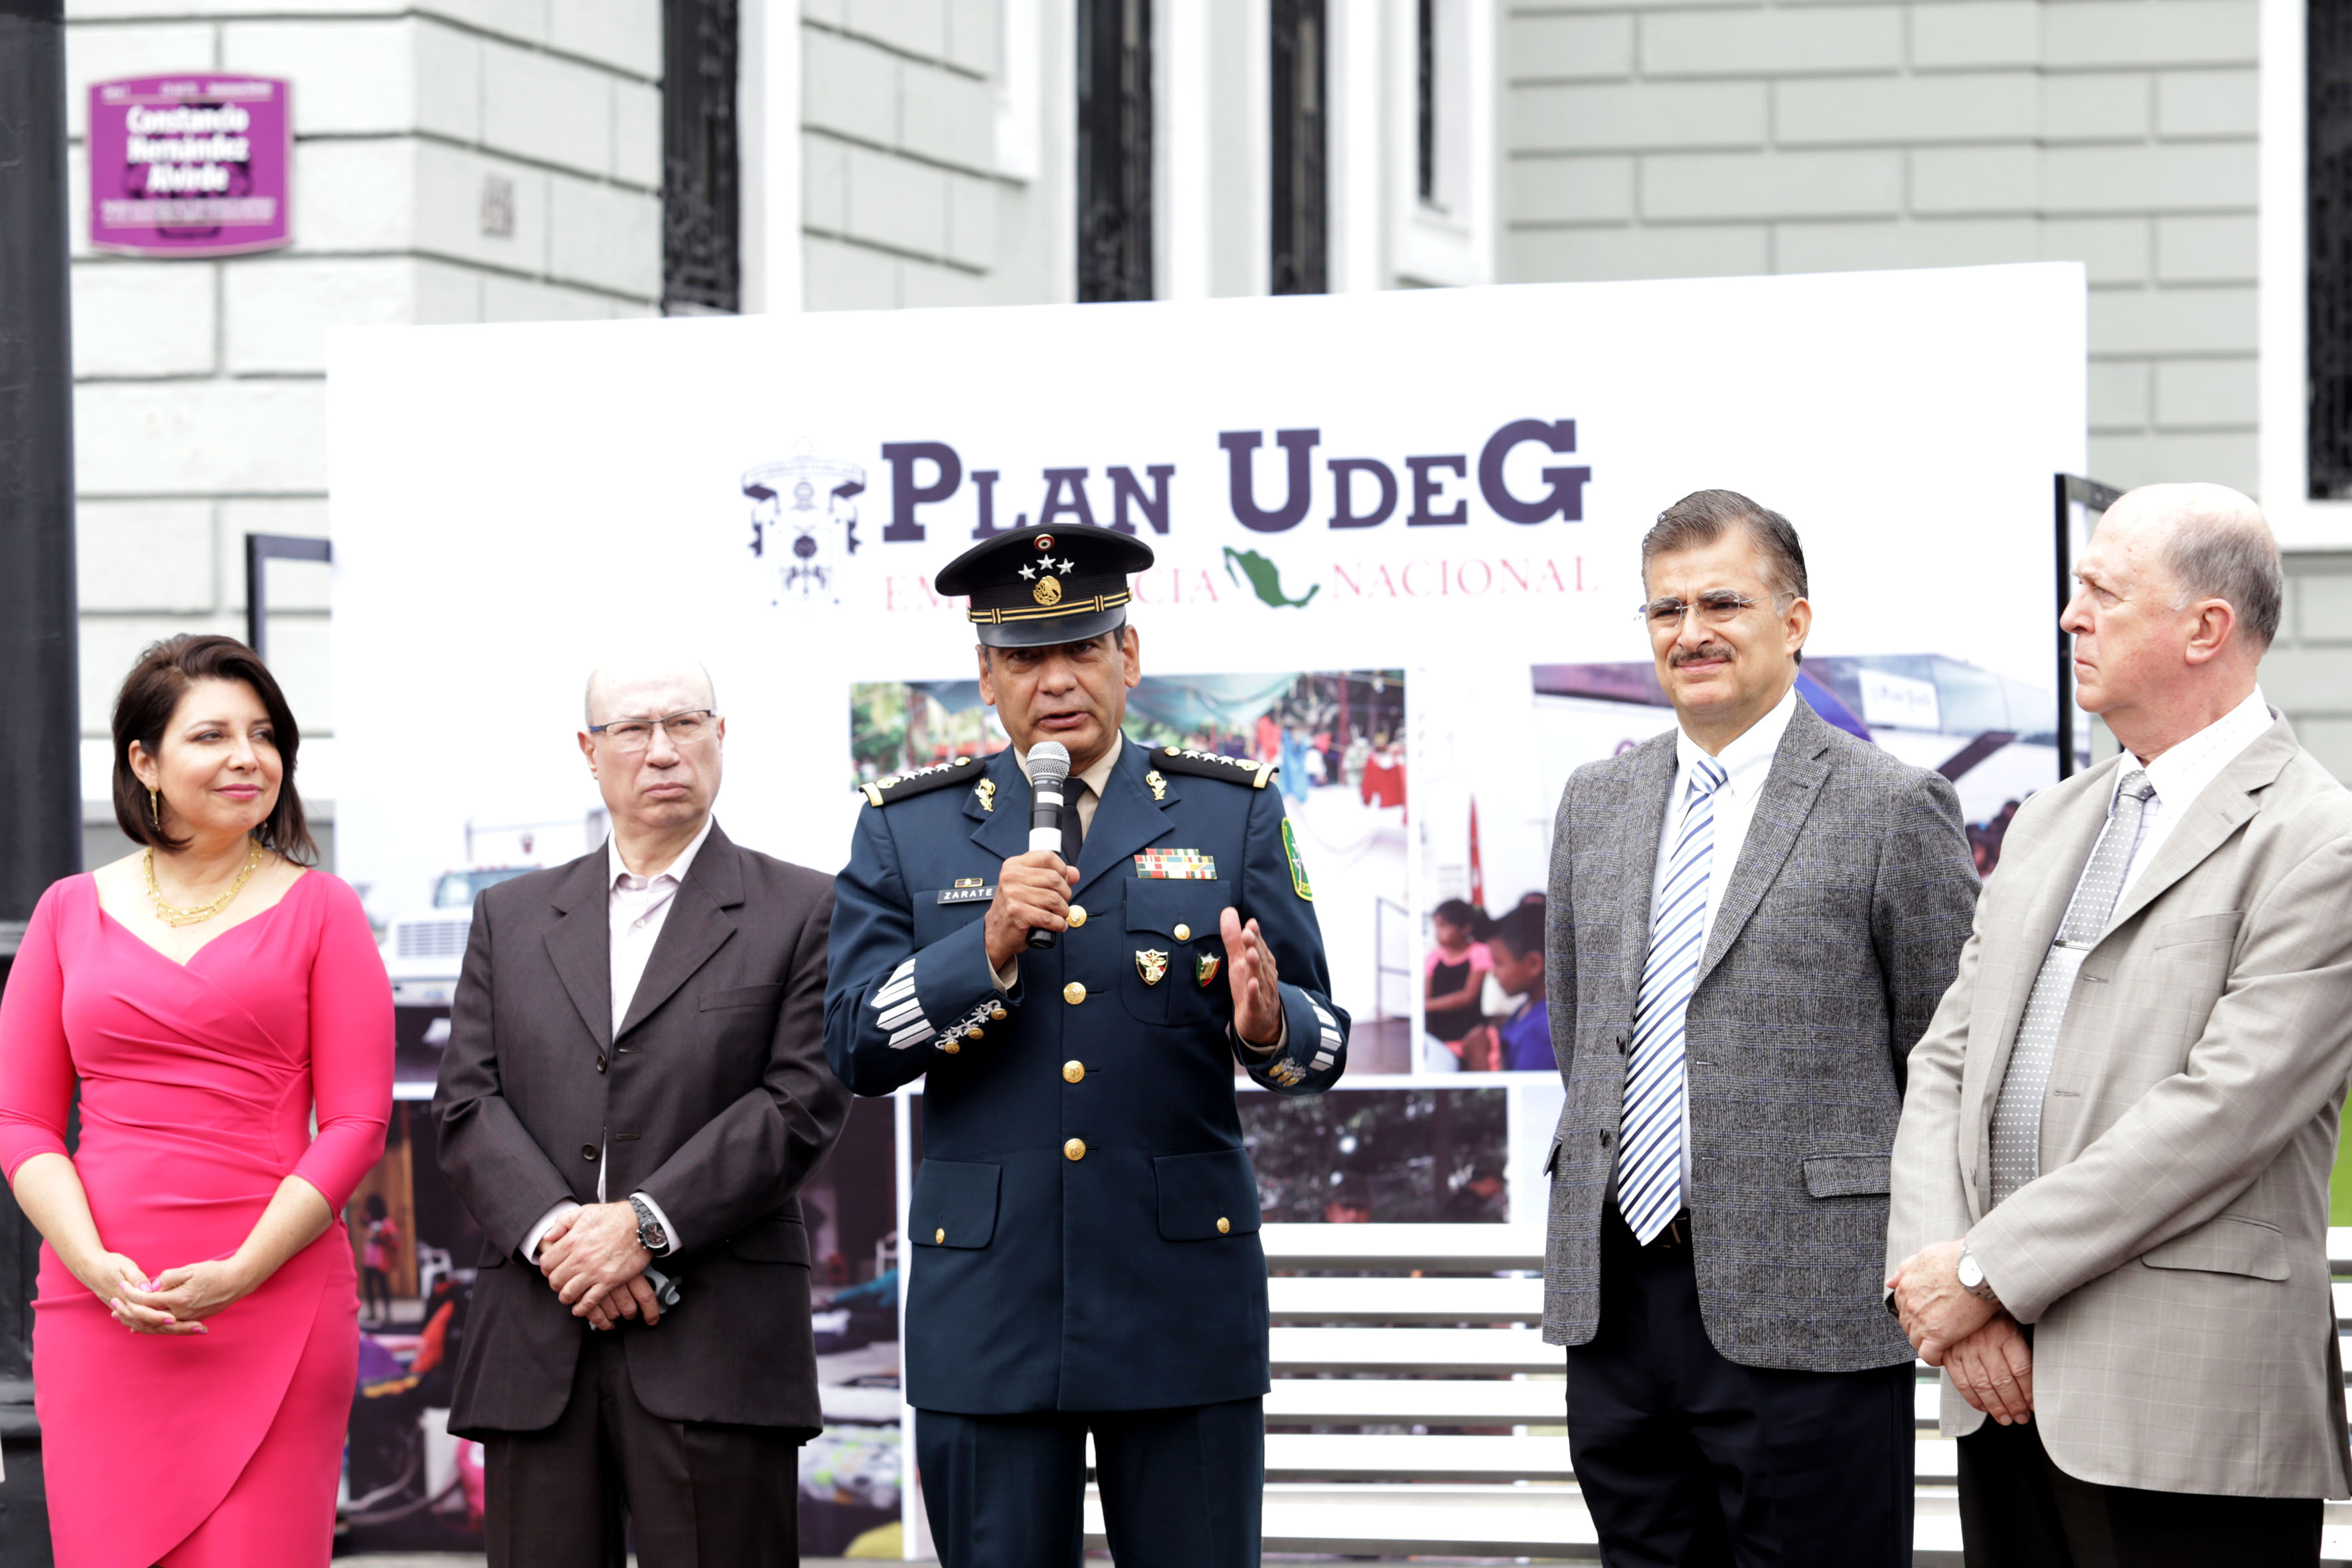 Habla el General Eduardo Zárate Landero. Destacó la solidaridad de la UdeG